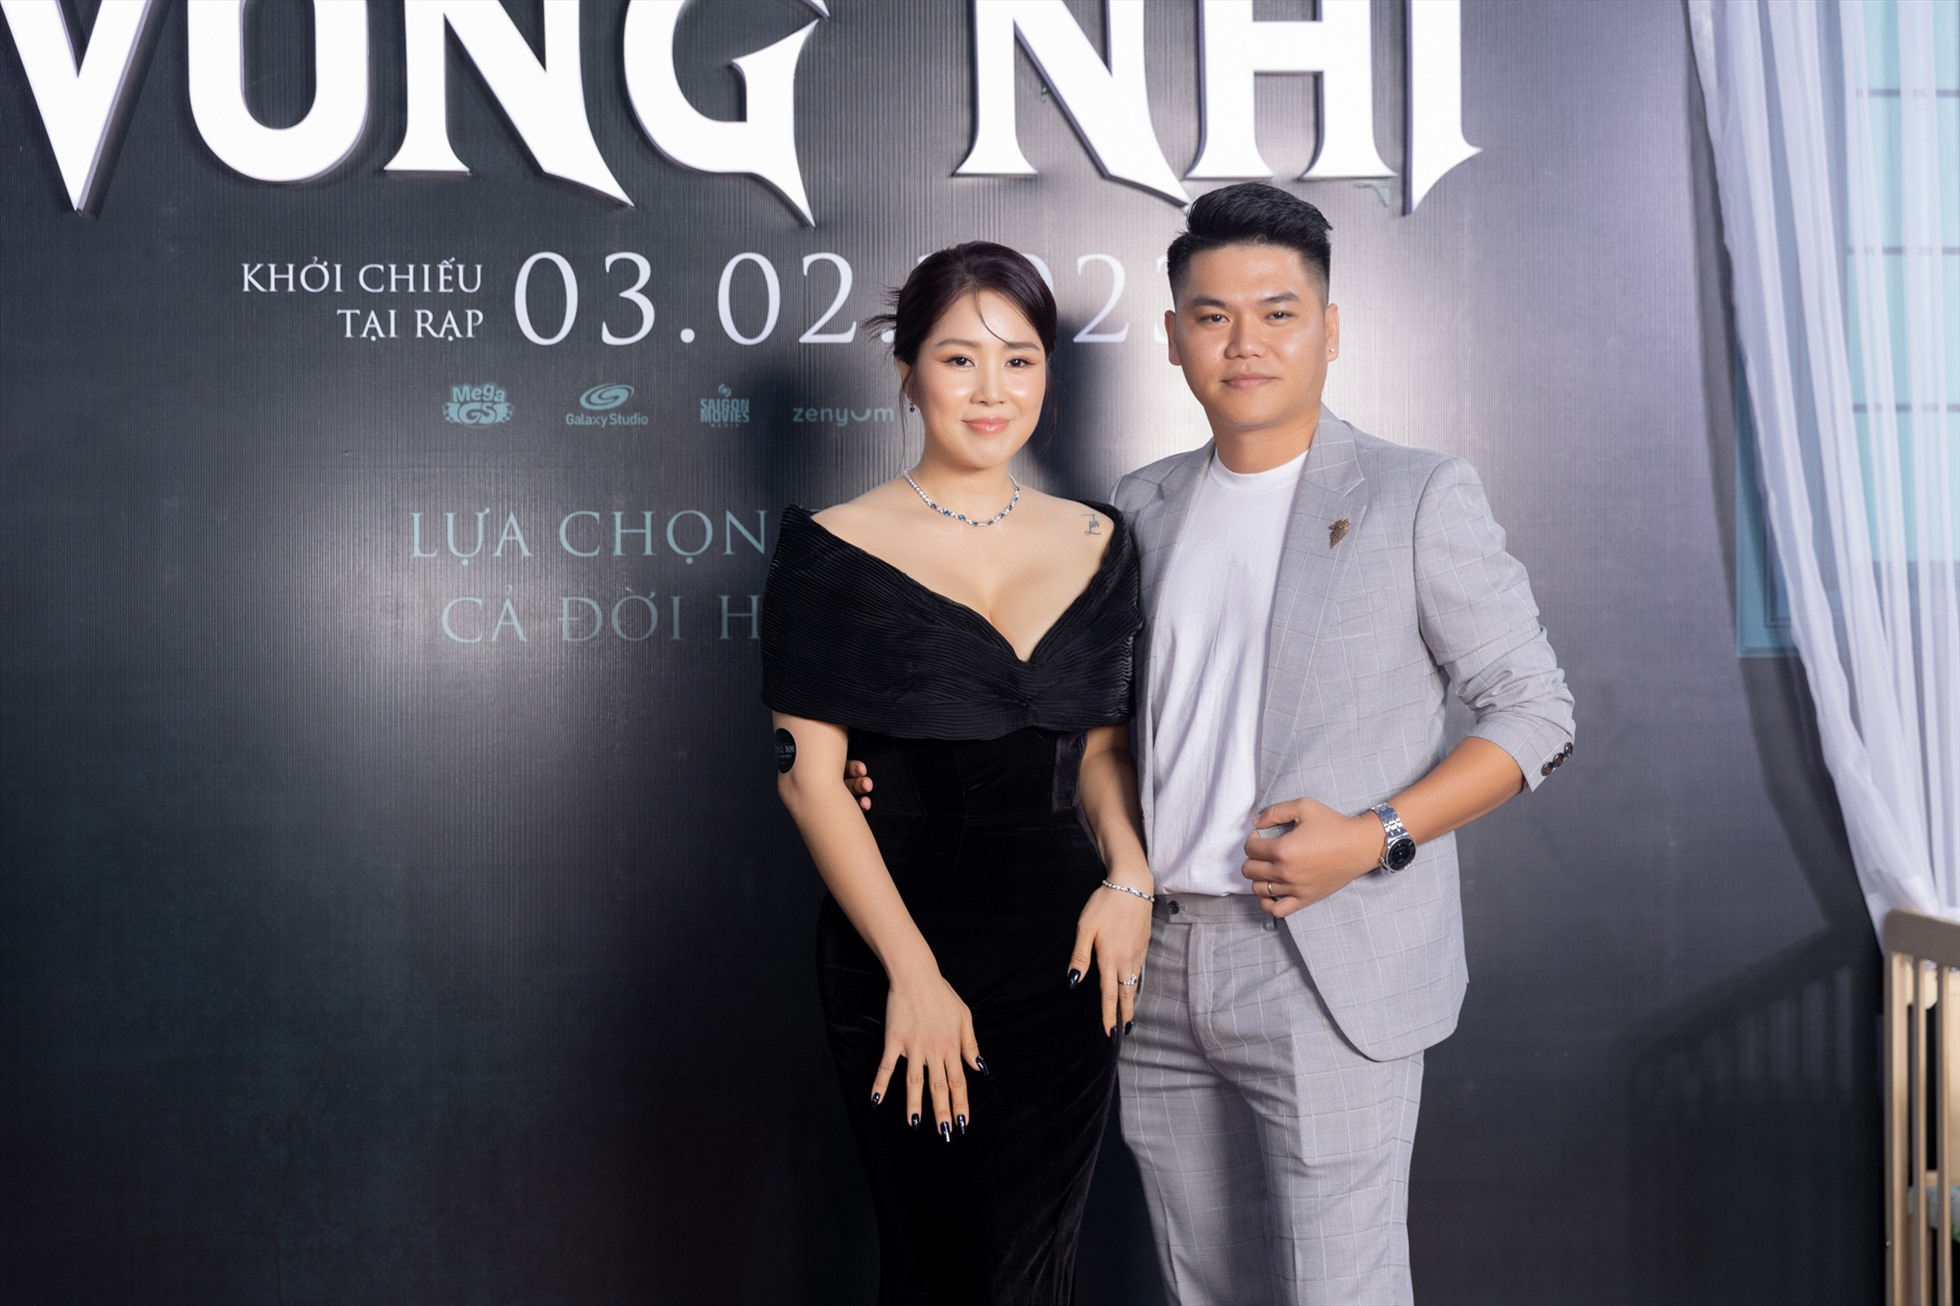 Nữ diễn viên được ông xã - nam ca sĩ Phạm Trung Kiên cùng các thành viên bố mẹ hai bên gia đình hộ tống và dành nhiều tình cảm, sự cổ vũ trong lần đầu xuất hiện trên màn ảnh rộng với một vai chính nặng ký.